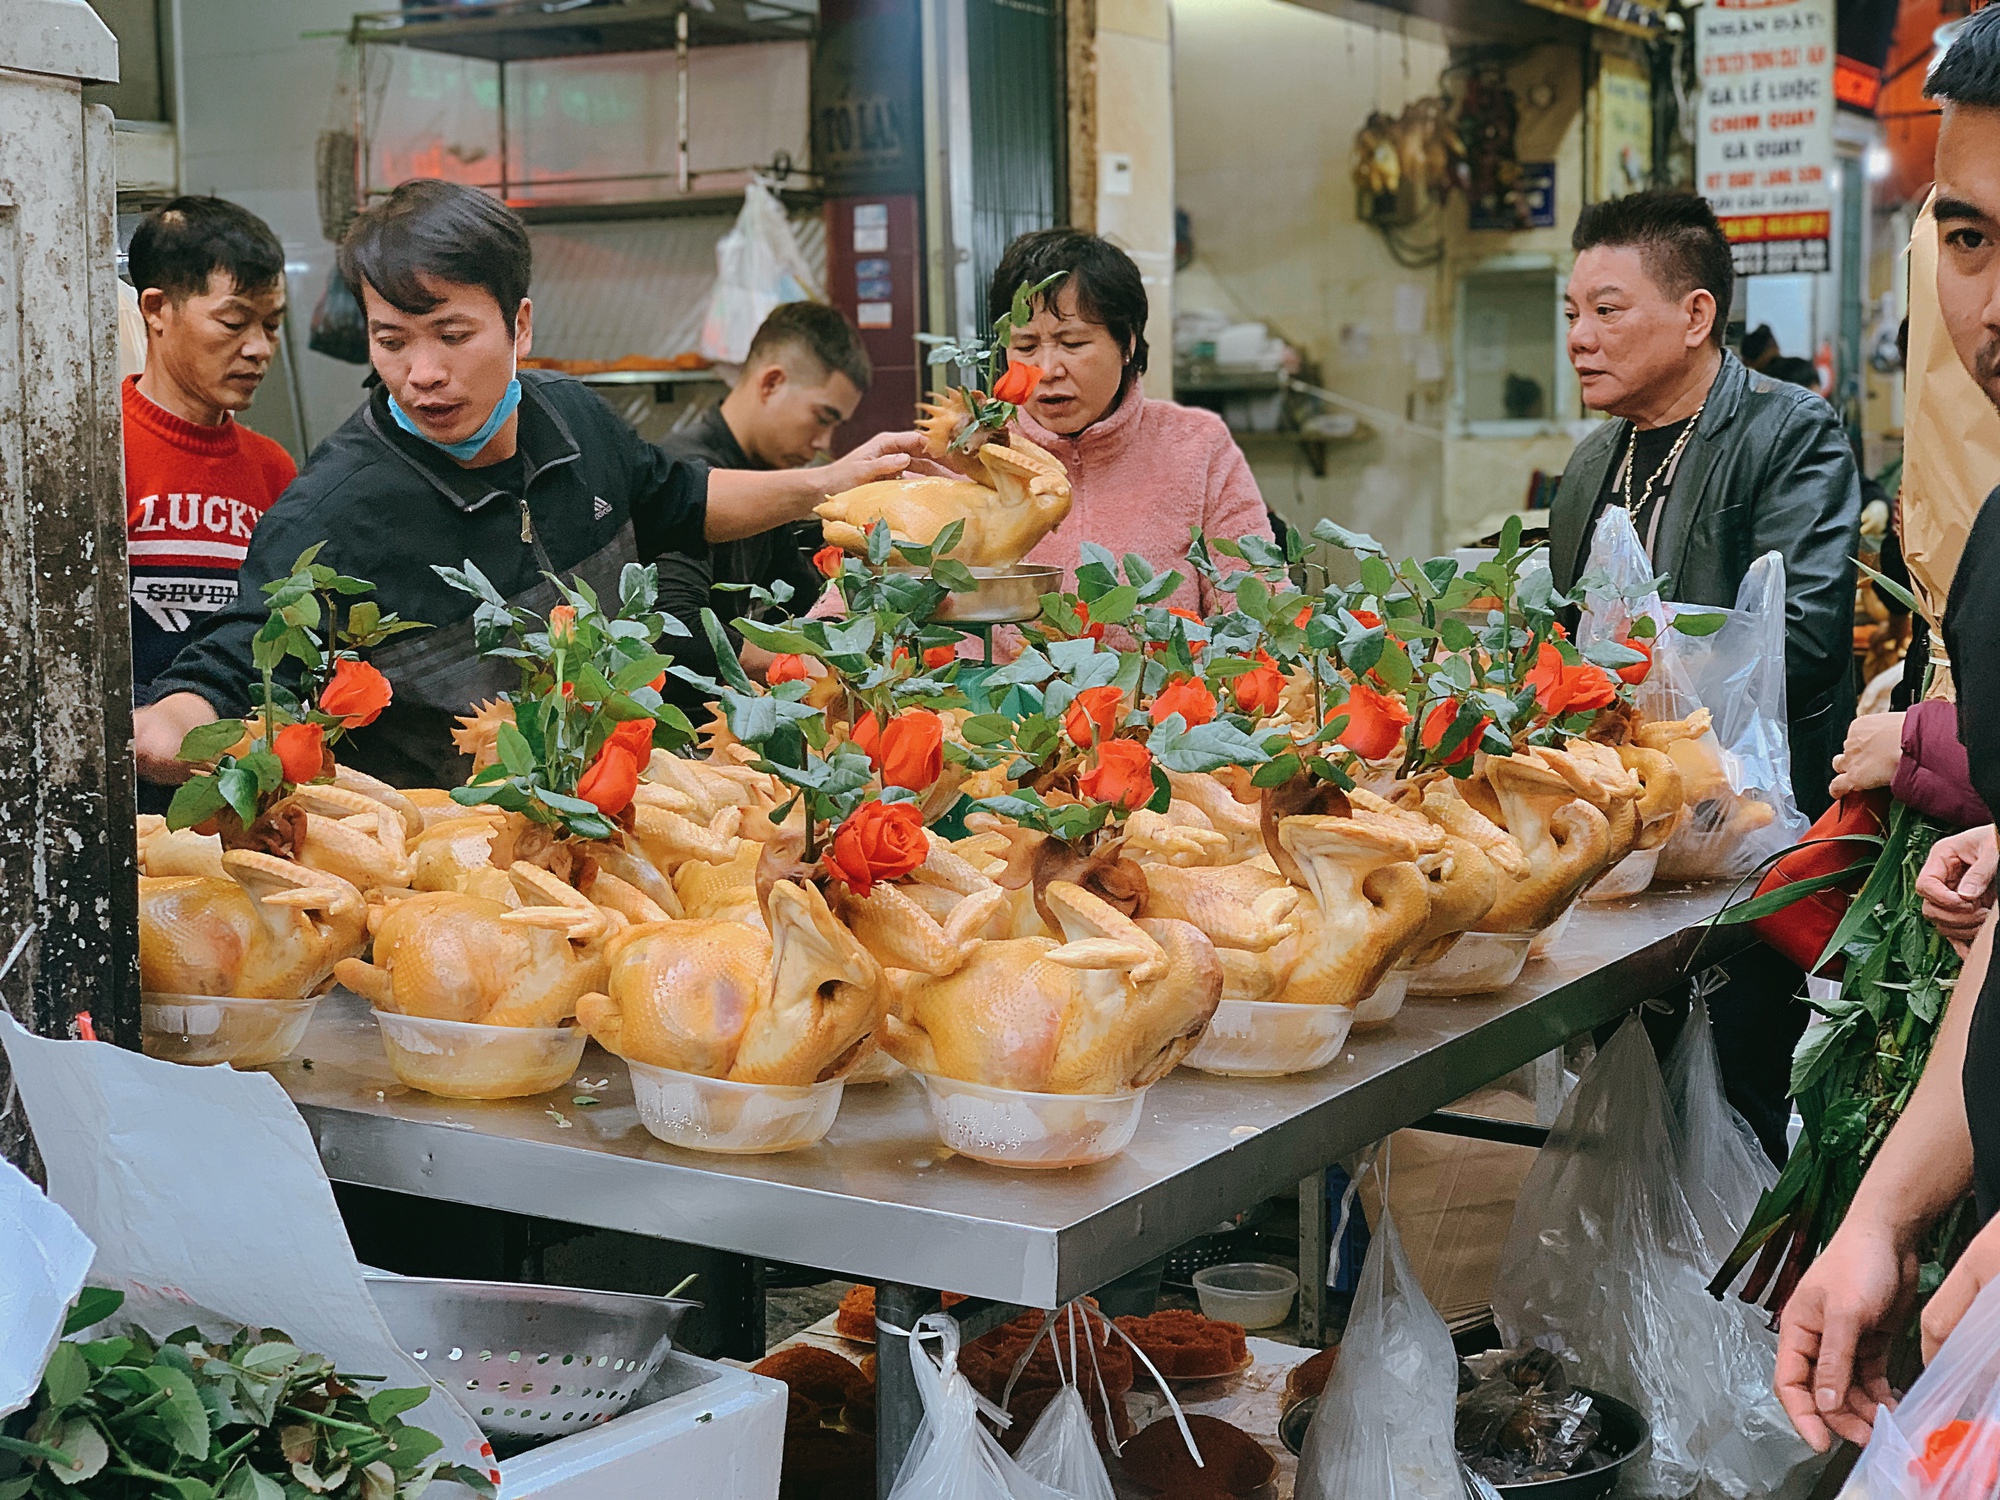 Ghé 'chợ nhà giàu' ngày cuối cùng của năm: Cửa hàng gà luộc ngậm hoa hồng tất bật phục vụ khách  - Ảnh 2.